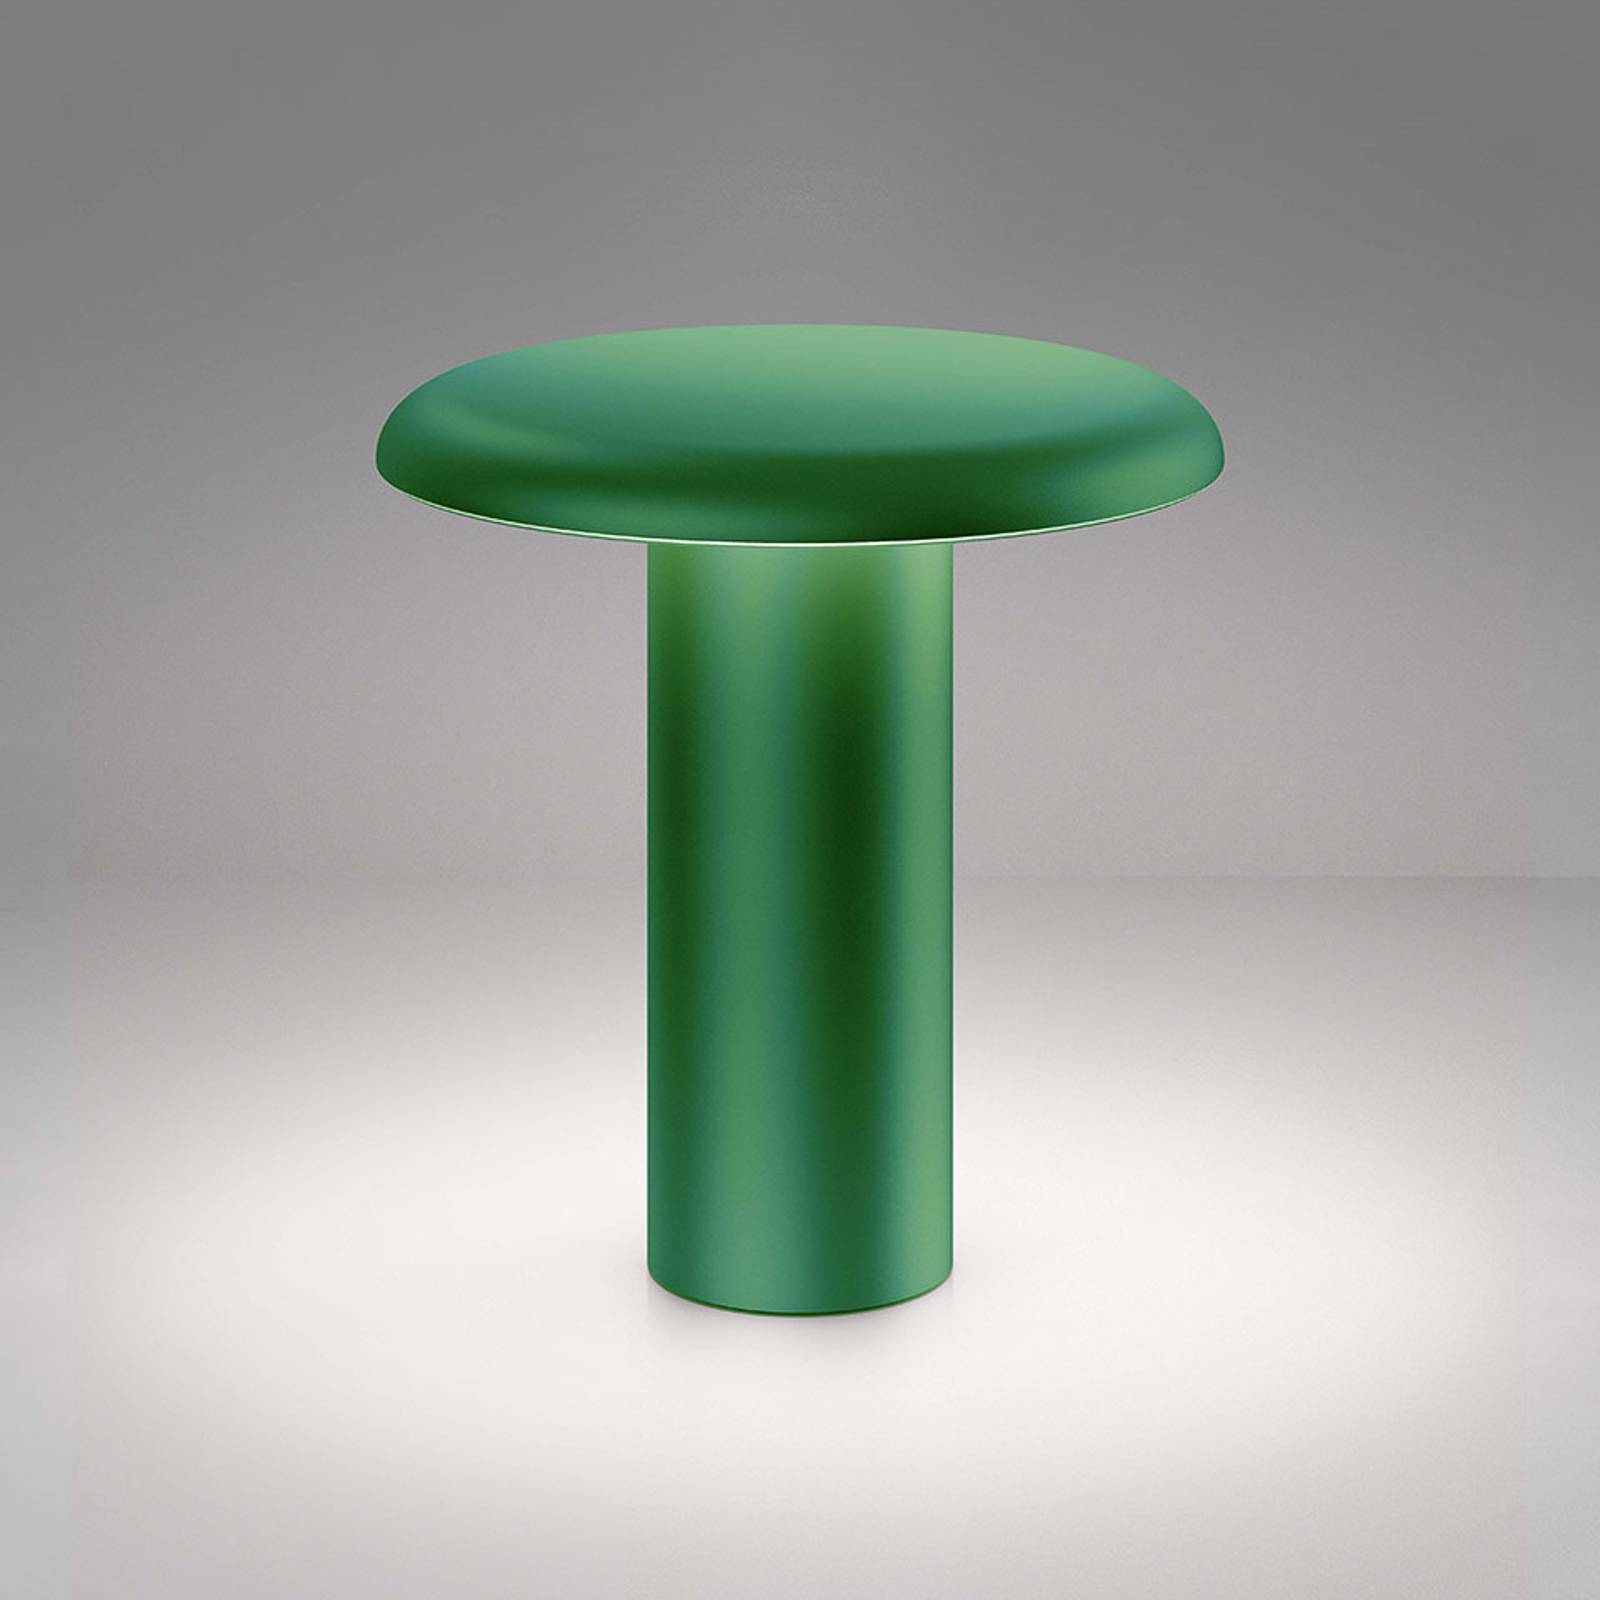 Artemide takku led asztali lámpa újratölthető akkumulátorral, zöld színben